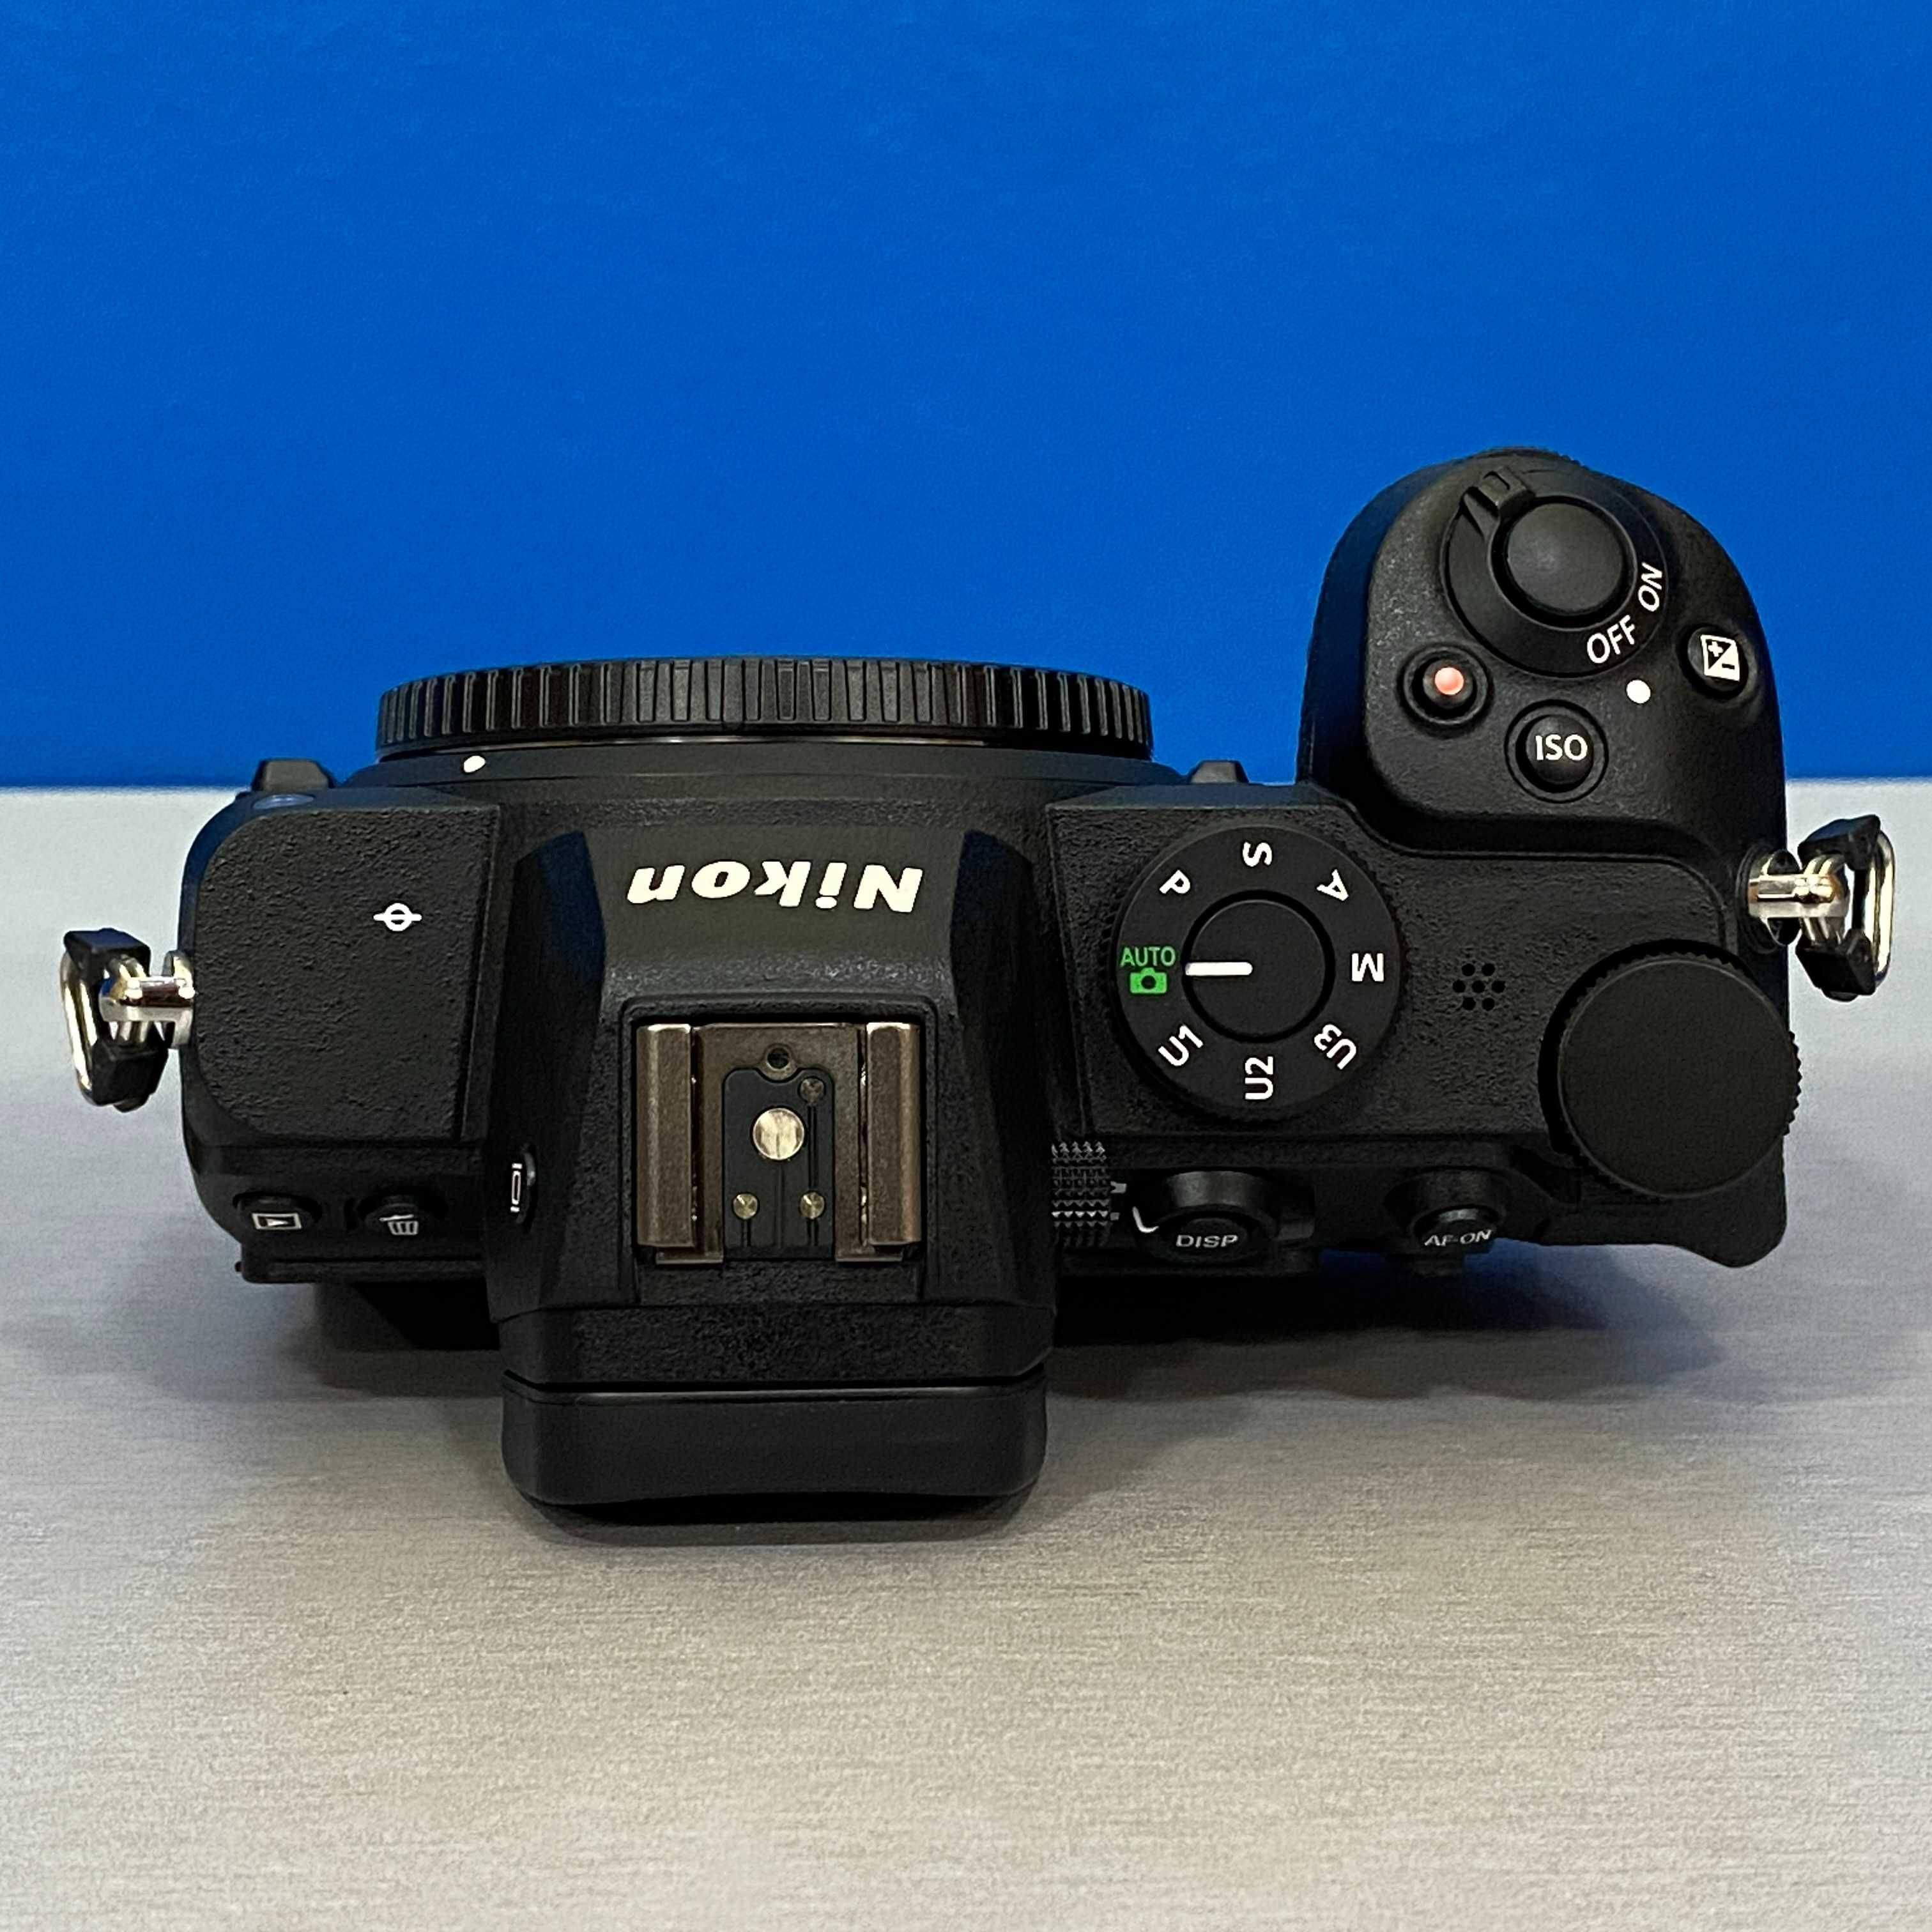 Nikon Z5 (Corpo) - 24.3MP - 3 ANOS DE GARANTIA